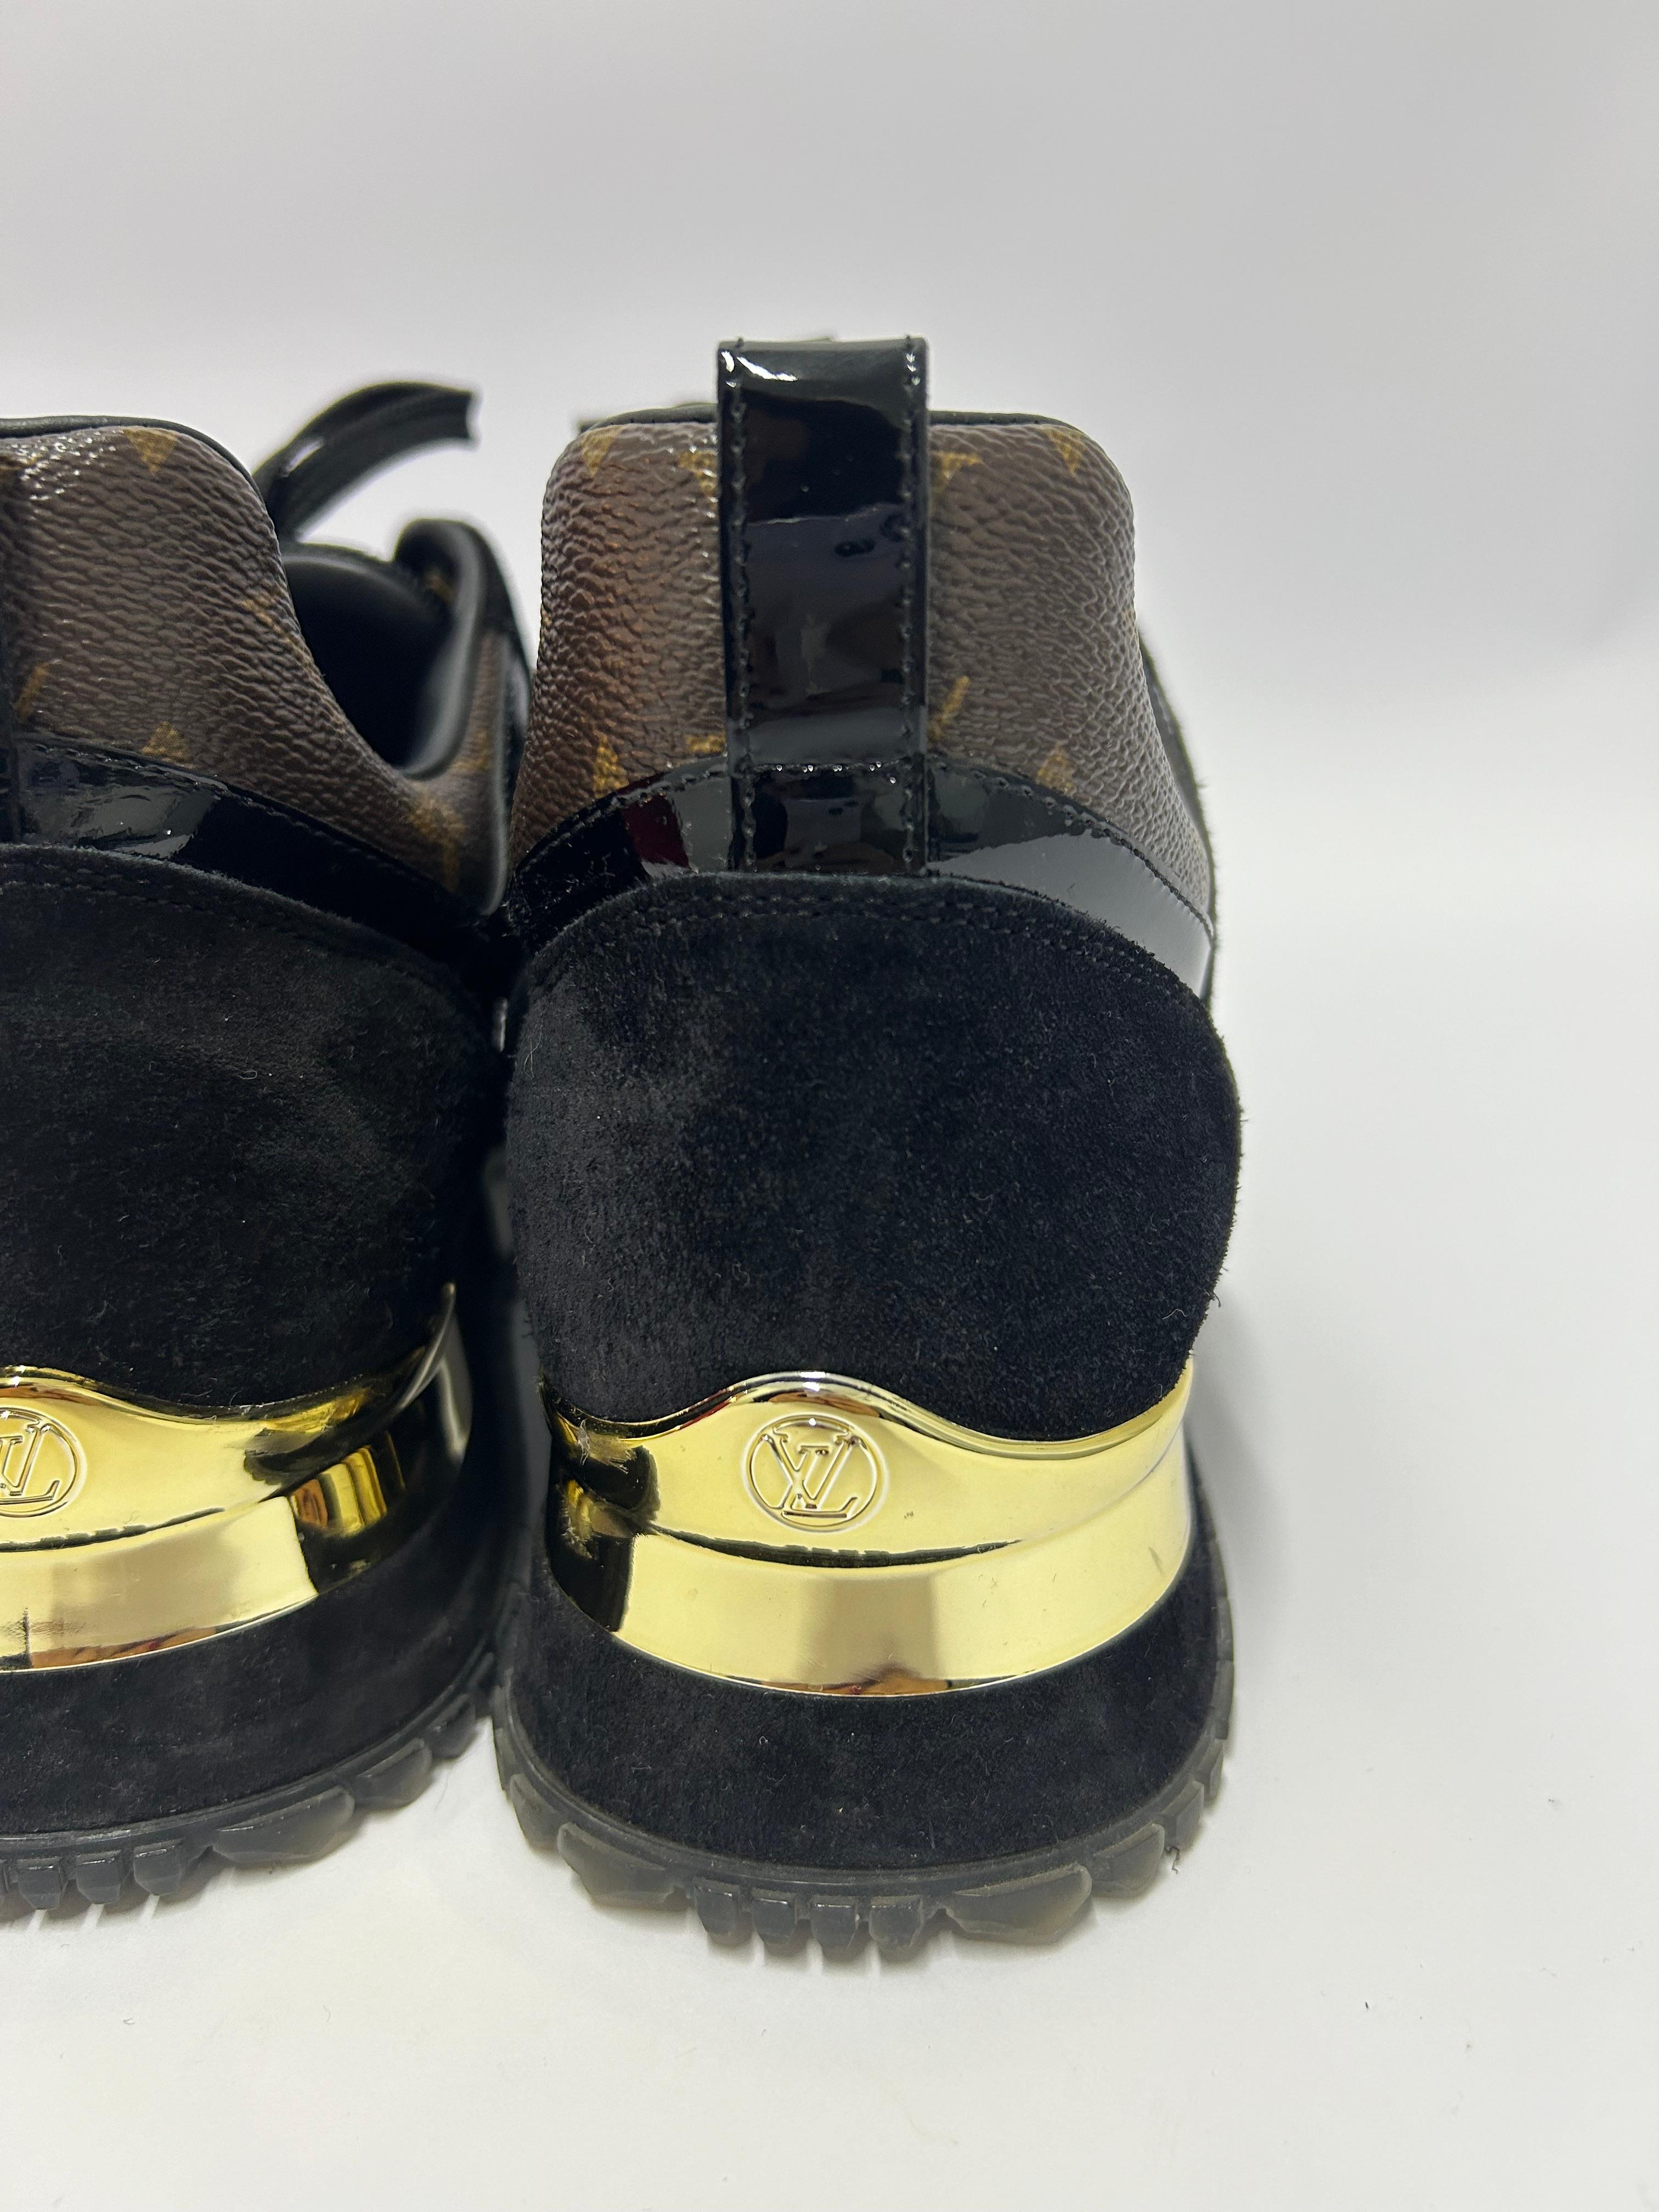 Louis Vuitton Run Away Sneakers Size EU 39 6